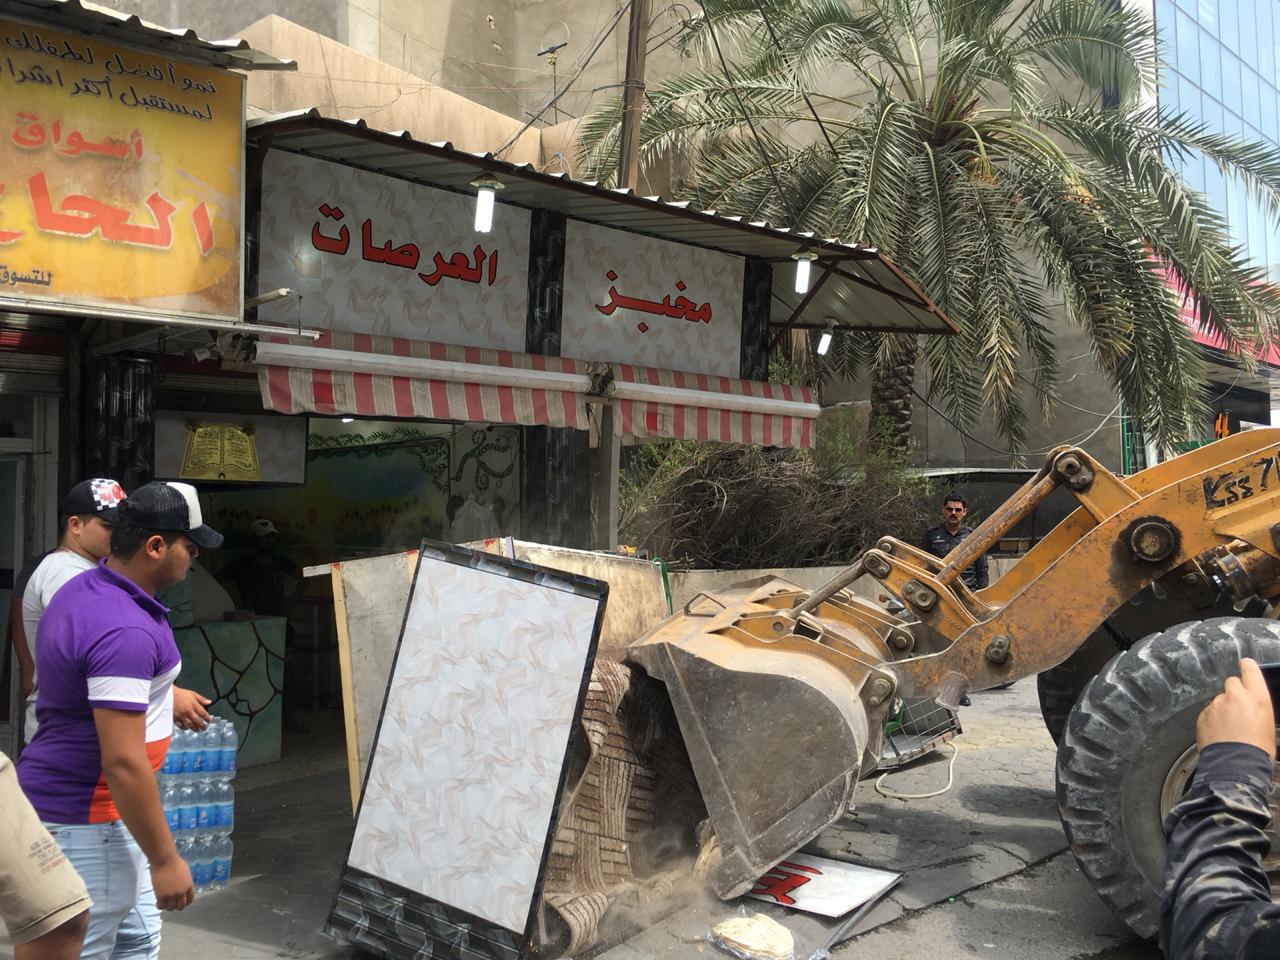 امانة بغداد تعلن عن حملة لازالة التجاوزات في منطقة الناظمية بالكرادة